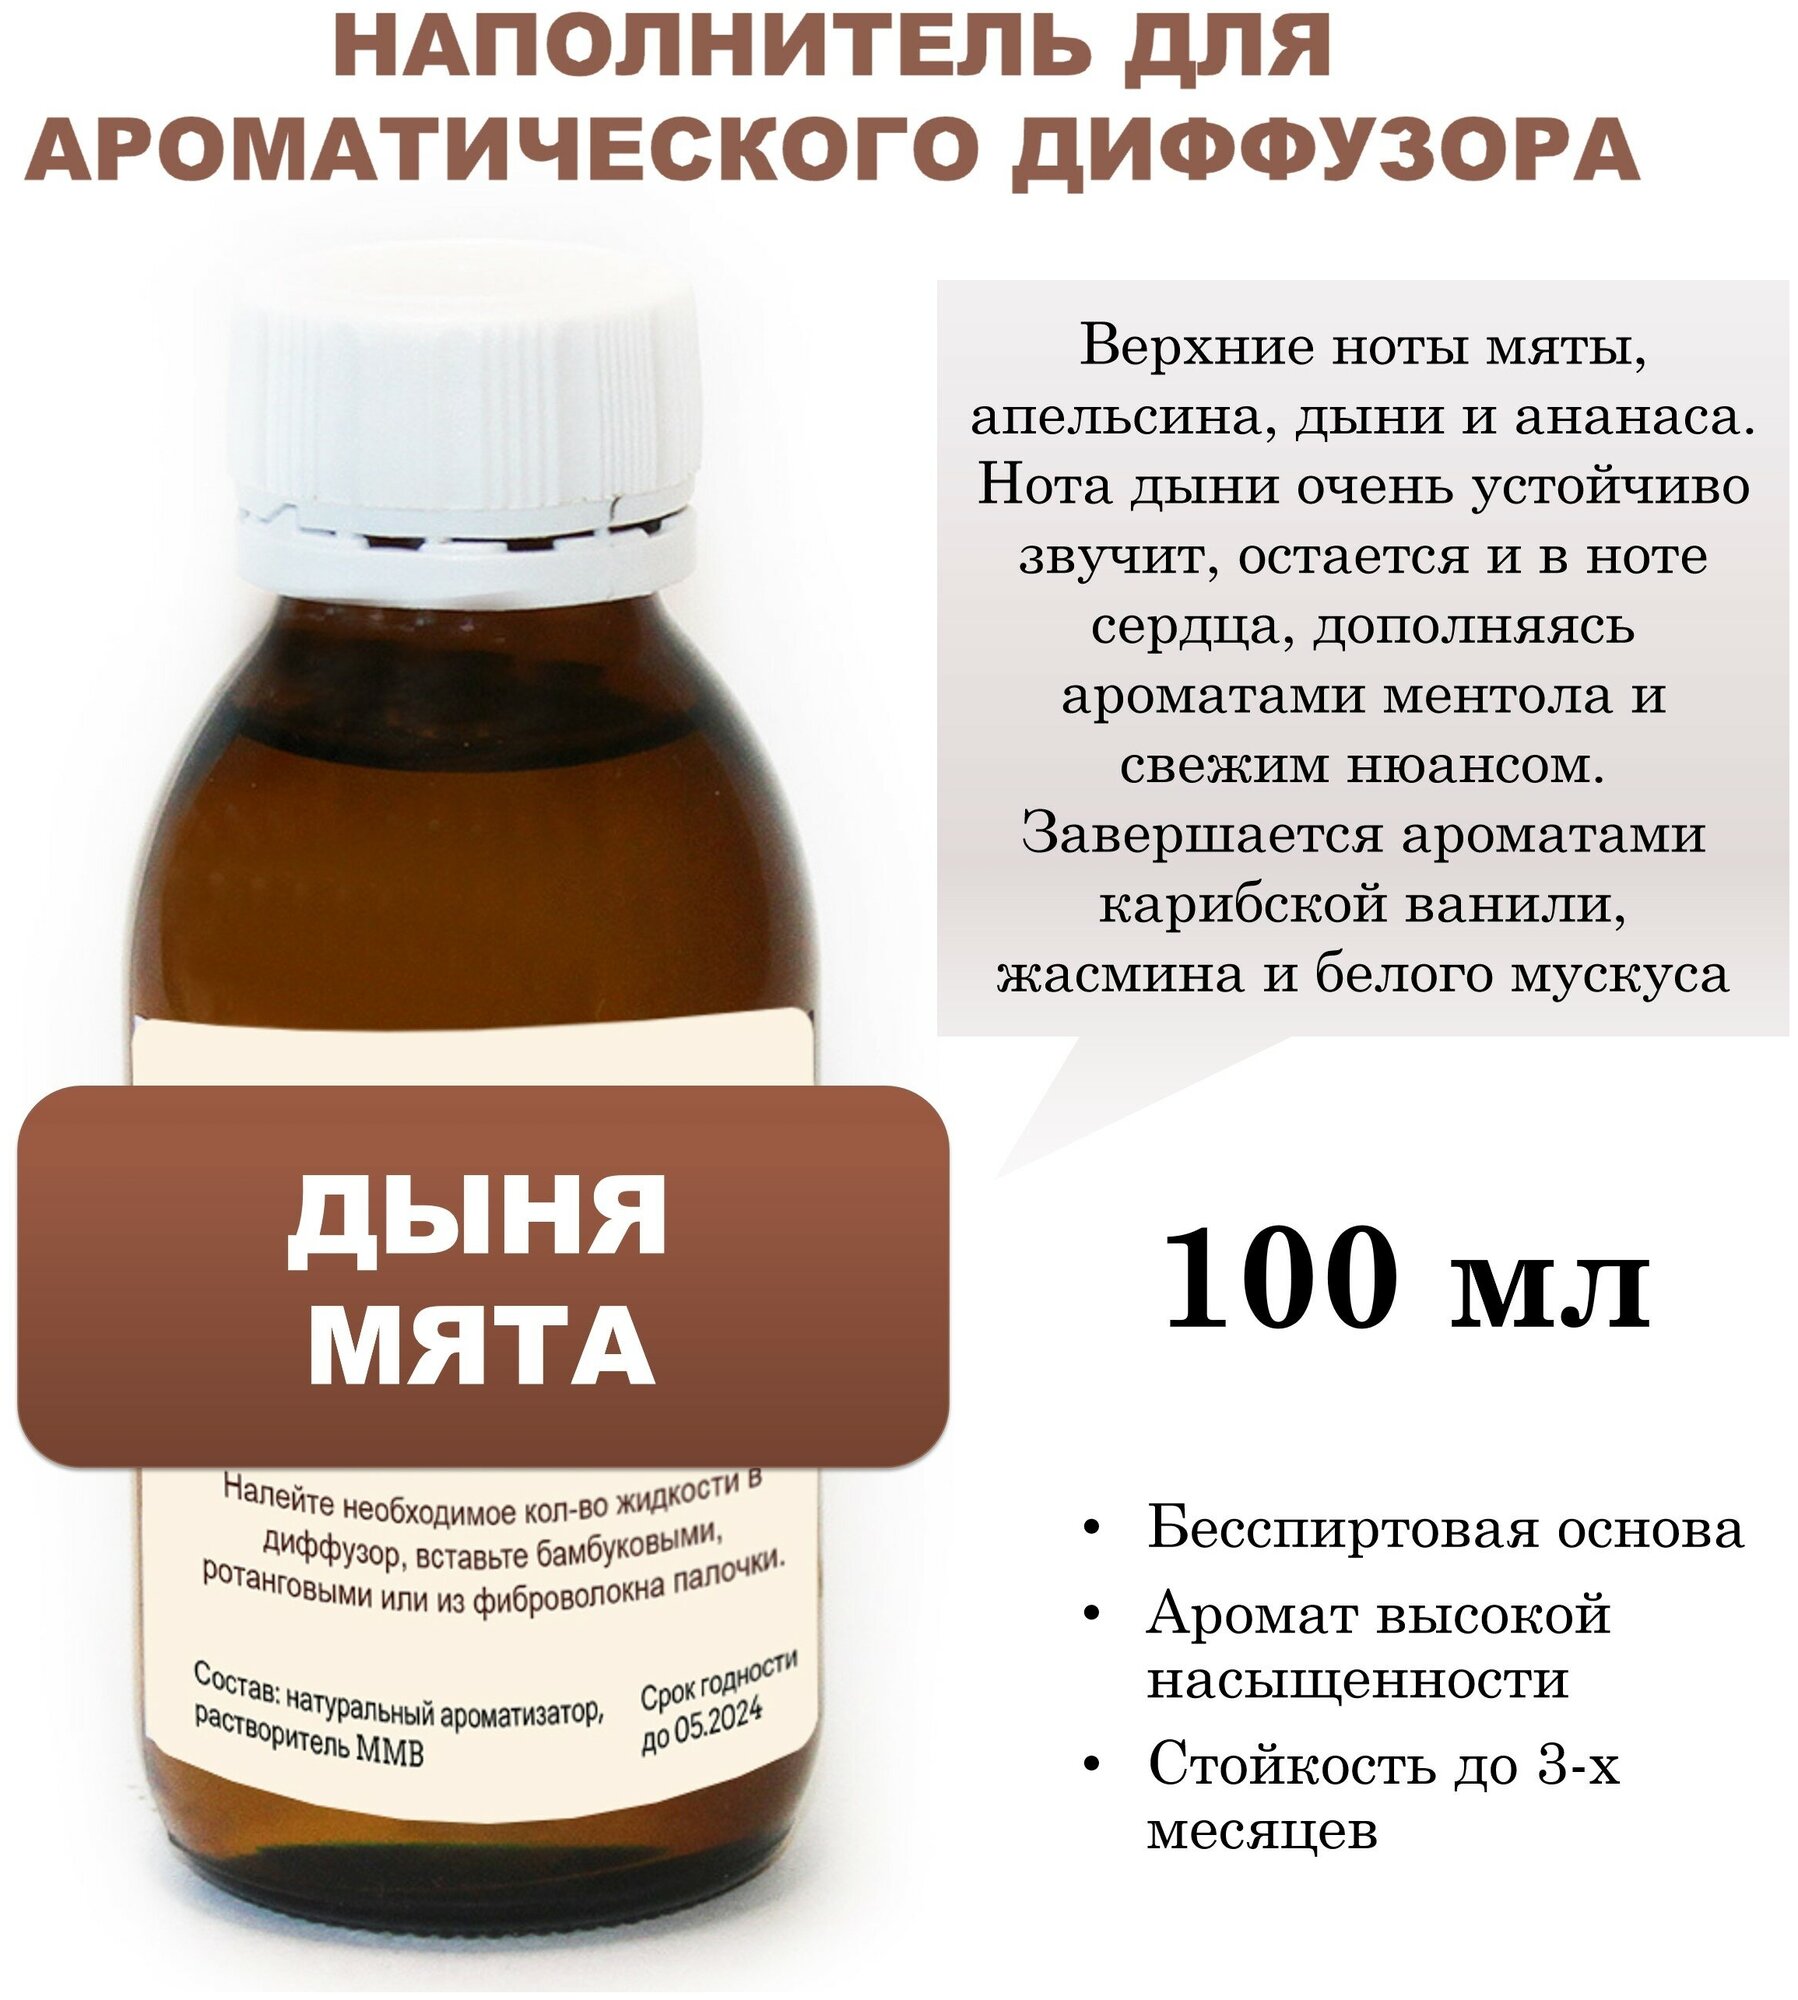 Дыня И мята - Наполнитель для ароматического диффузора (100 мл)